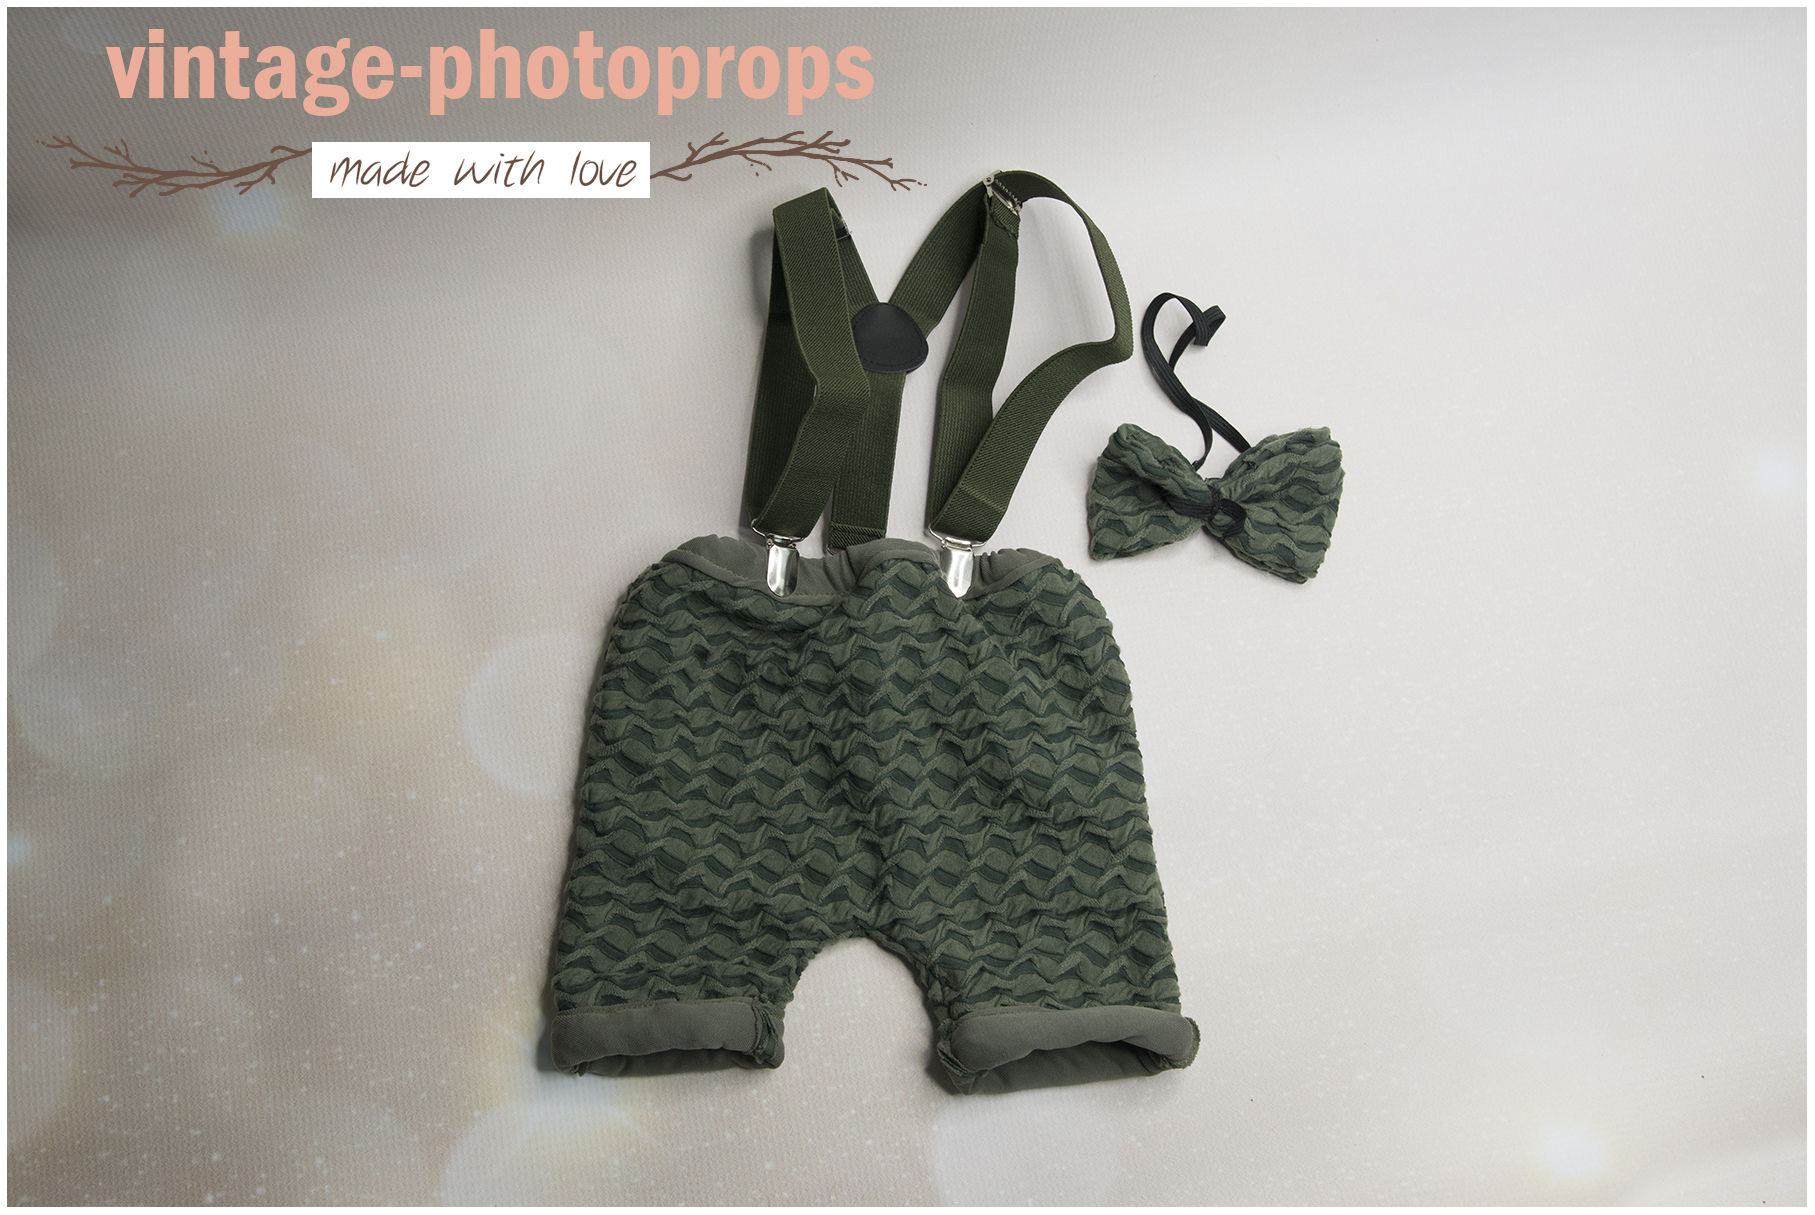 Verleden Van streek Allergisch Sitters-set green zig zag vintage broekje met bretels en strik – Vintage  Photoprops